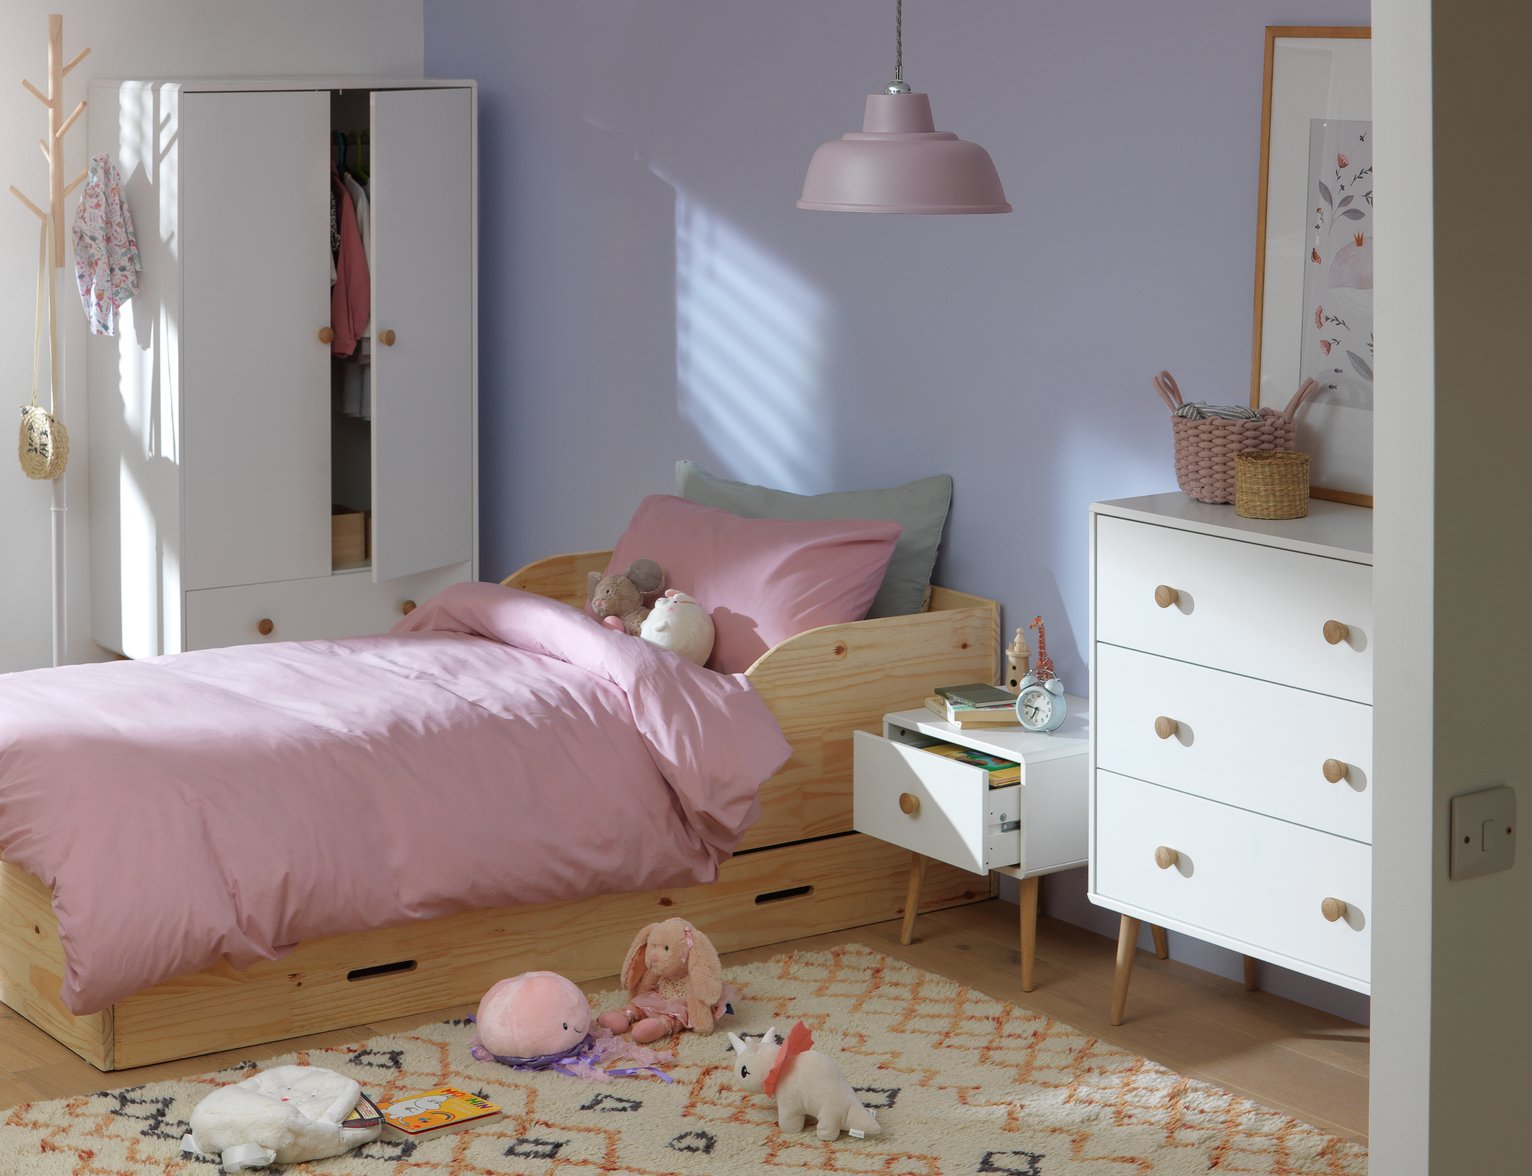 children's bed and wardrobe set